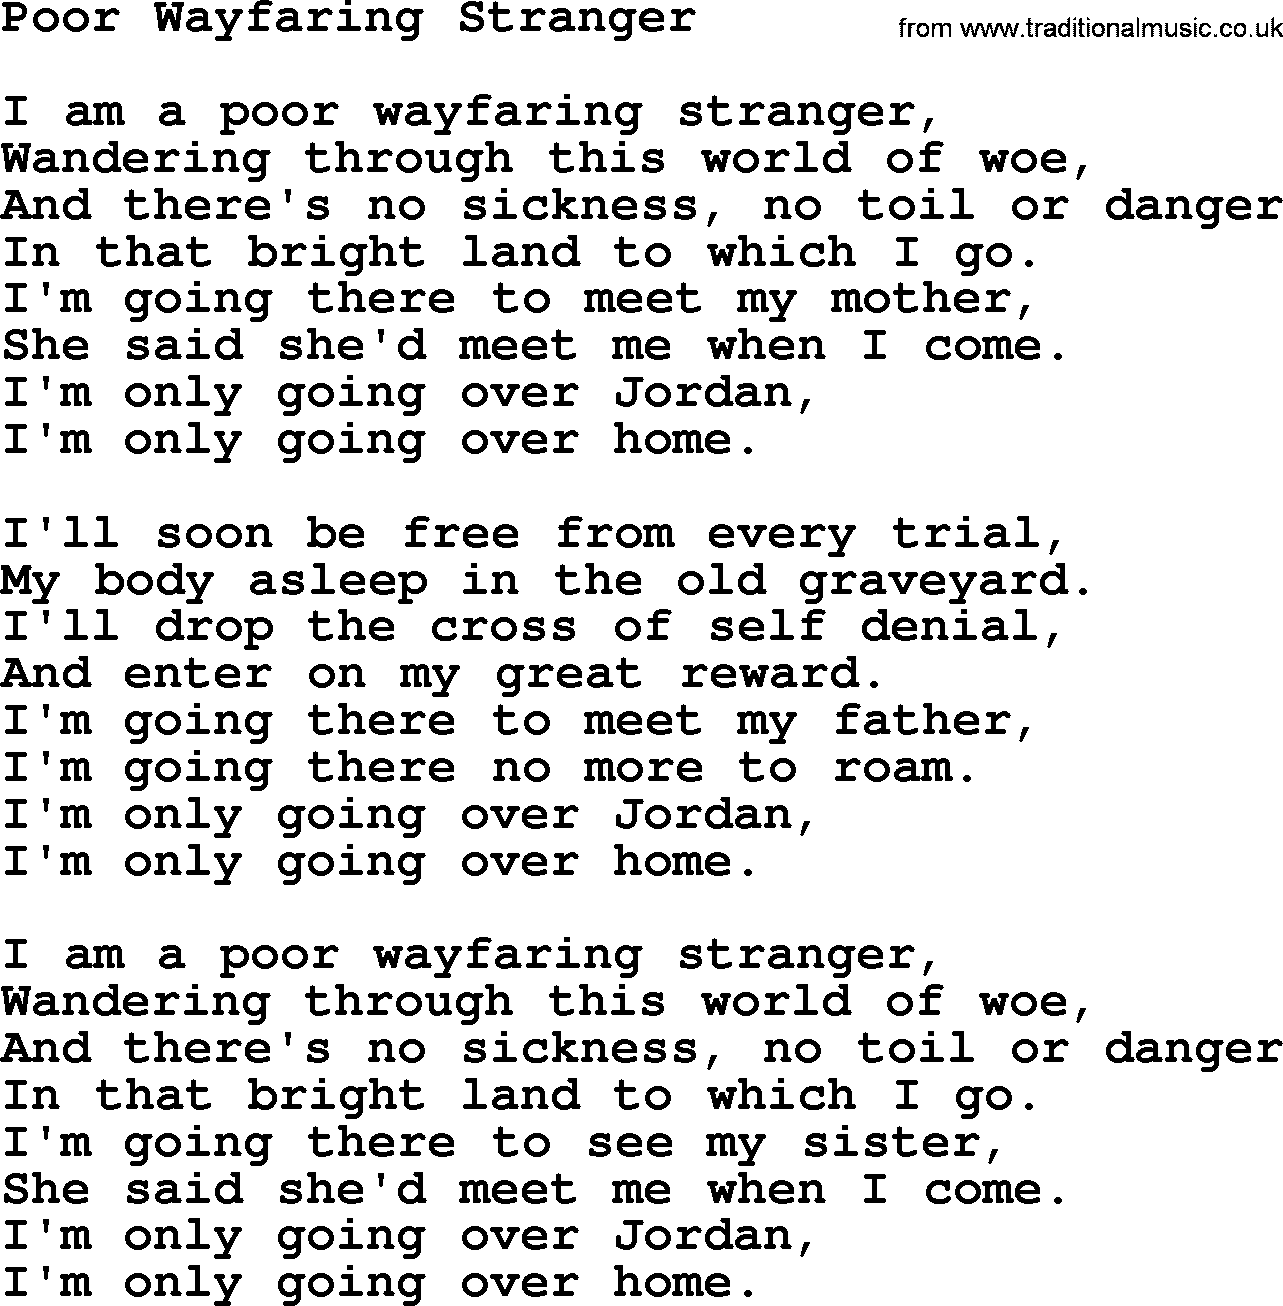 Joan Baez song Poor Wayfaring Stranger, lyrics